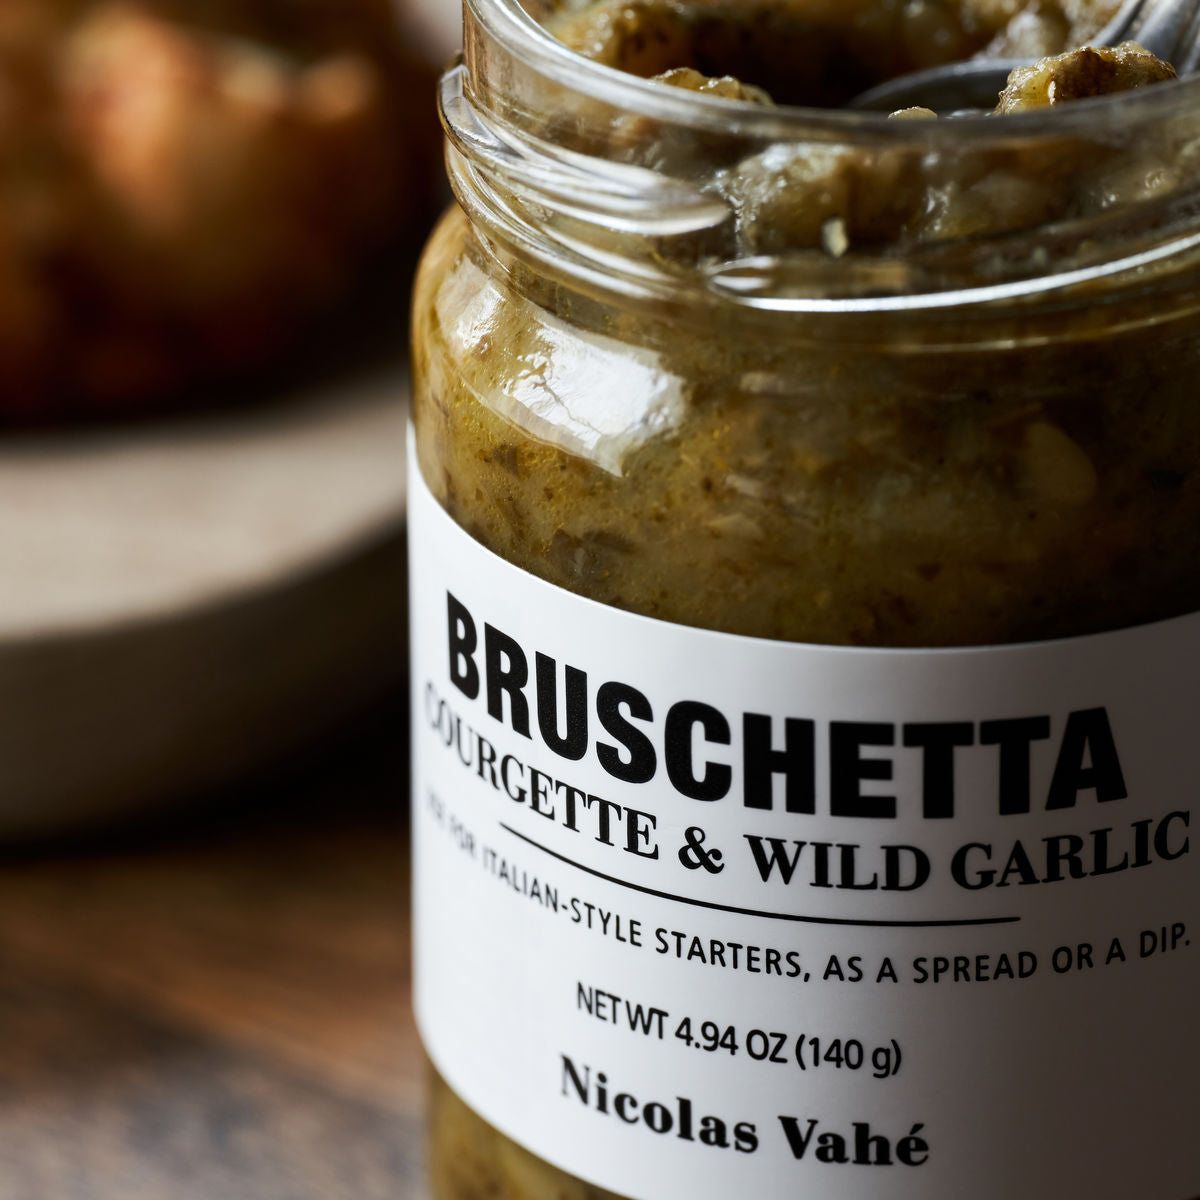 Bruschetta, courgette & wild garlic